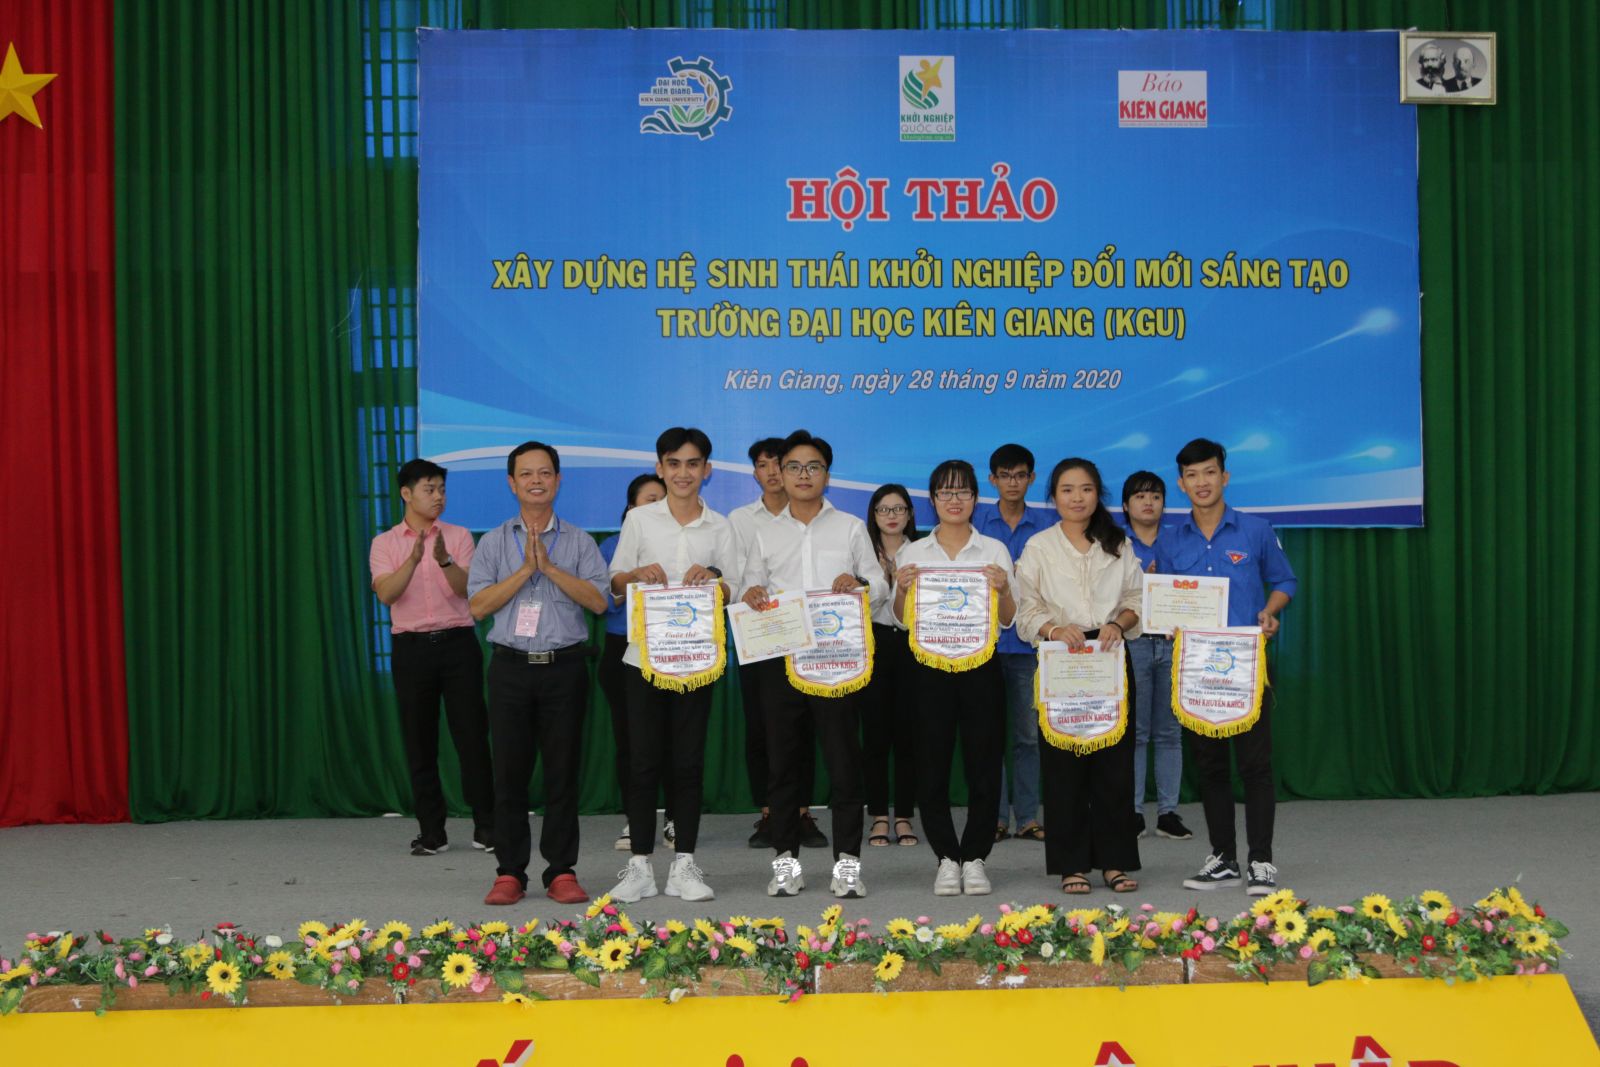 ThS. Nguyễn Quốc Nam - Founder Rừng Nam Farm U Minh Thượng trao giấy khen và phần thưởng cho 5 nhóm tác giả đạt giải khuyến khích tại cuộc thi “Ý tưởng khởi nghiệp đổi mới sáng tạo KGU startup 2020”